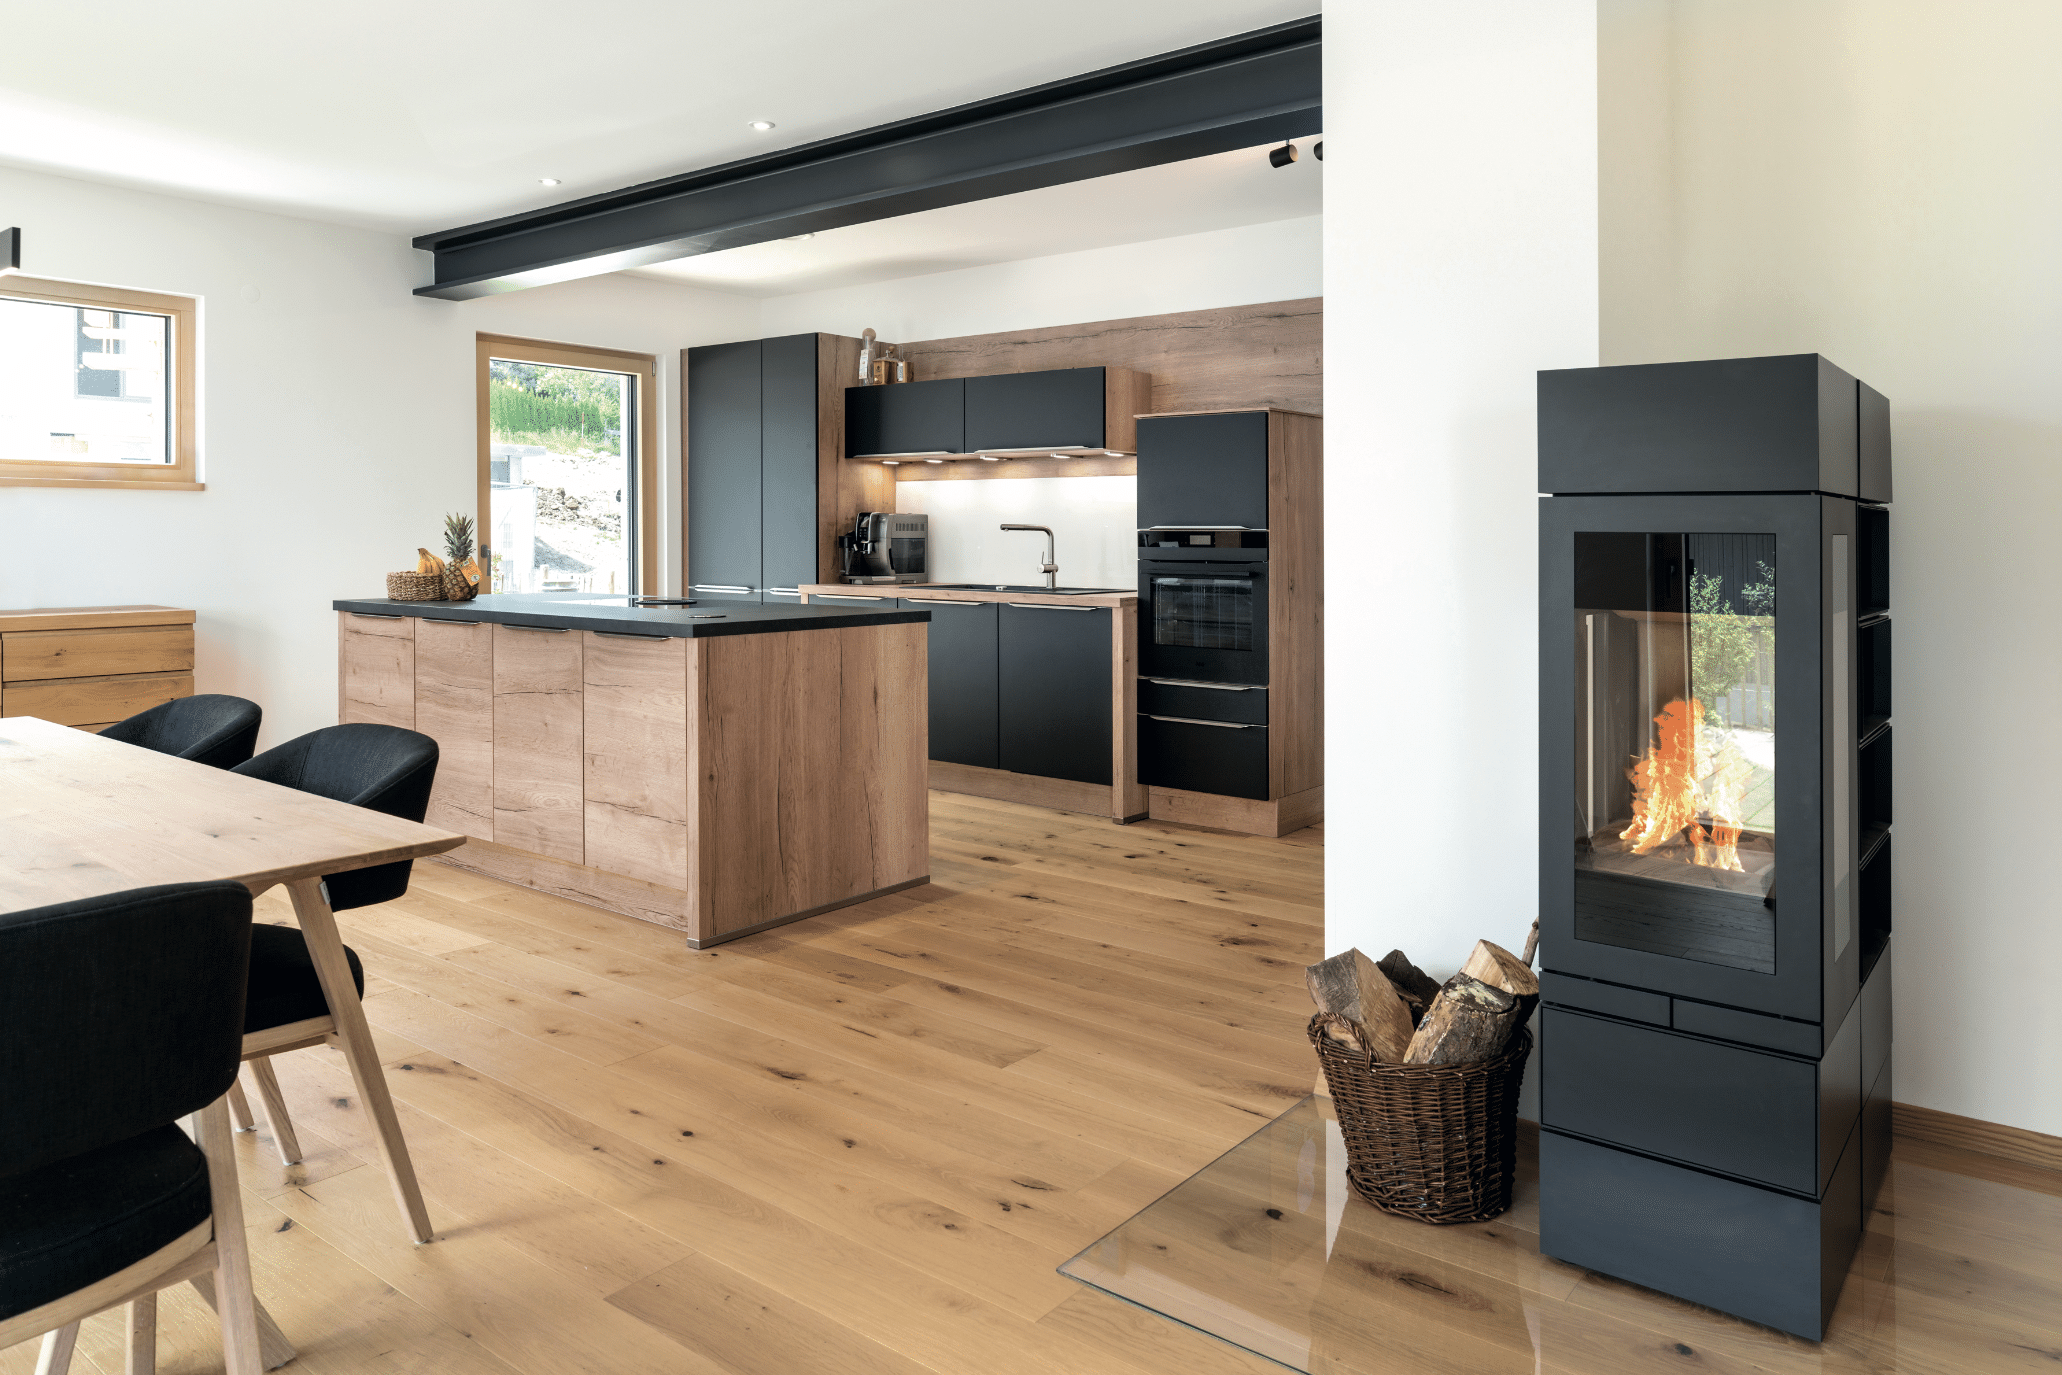 Regnauer zeigt eine Küche mit einer Küchenzeile aus Holz und mit schwarzen Fronten, einer Kochinsel mit Kochfeld und dem angrenzenden Esszimmer mit einem schwarzen Kamin in dem ein Feuer für Wärme sorgt.